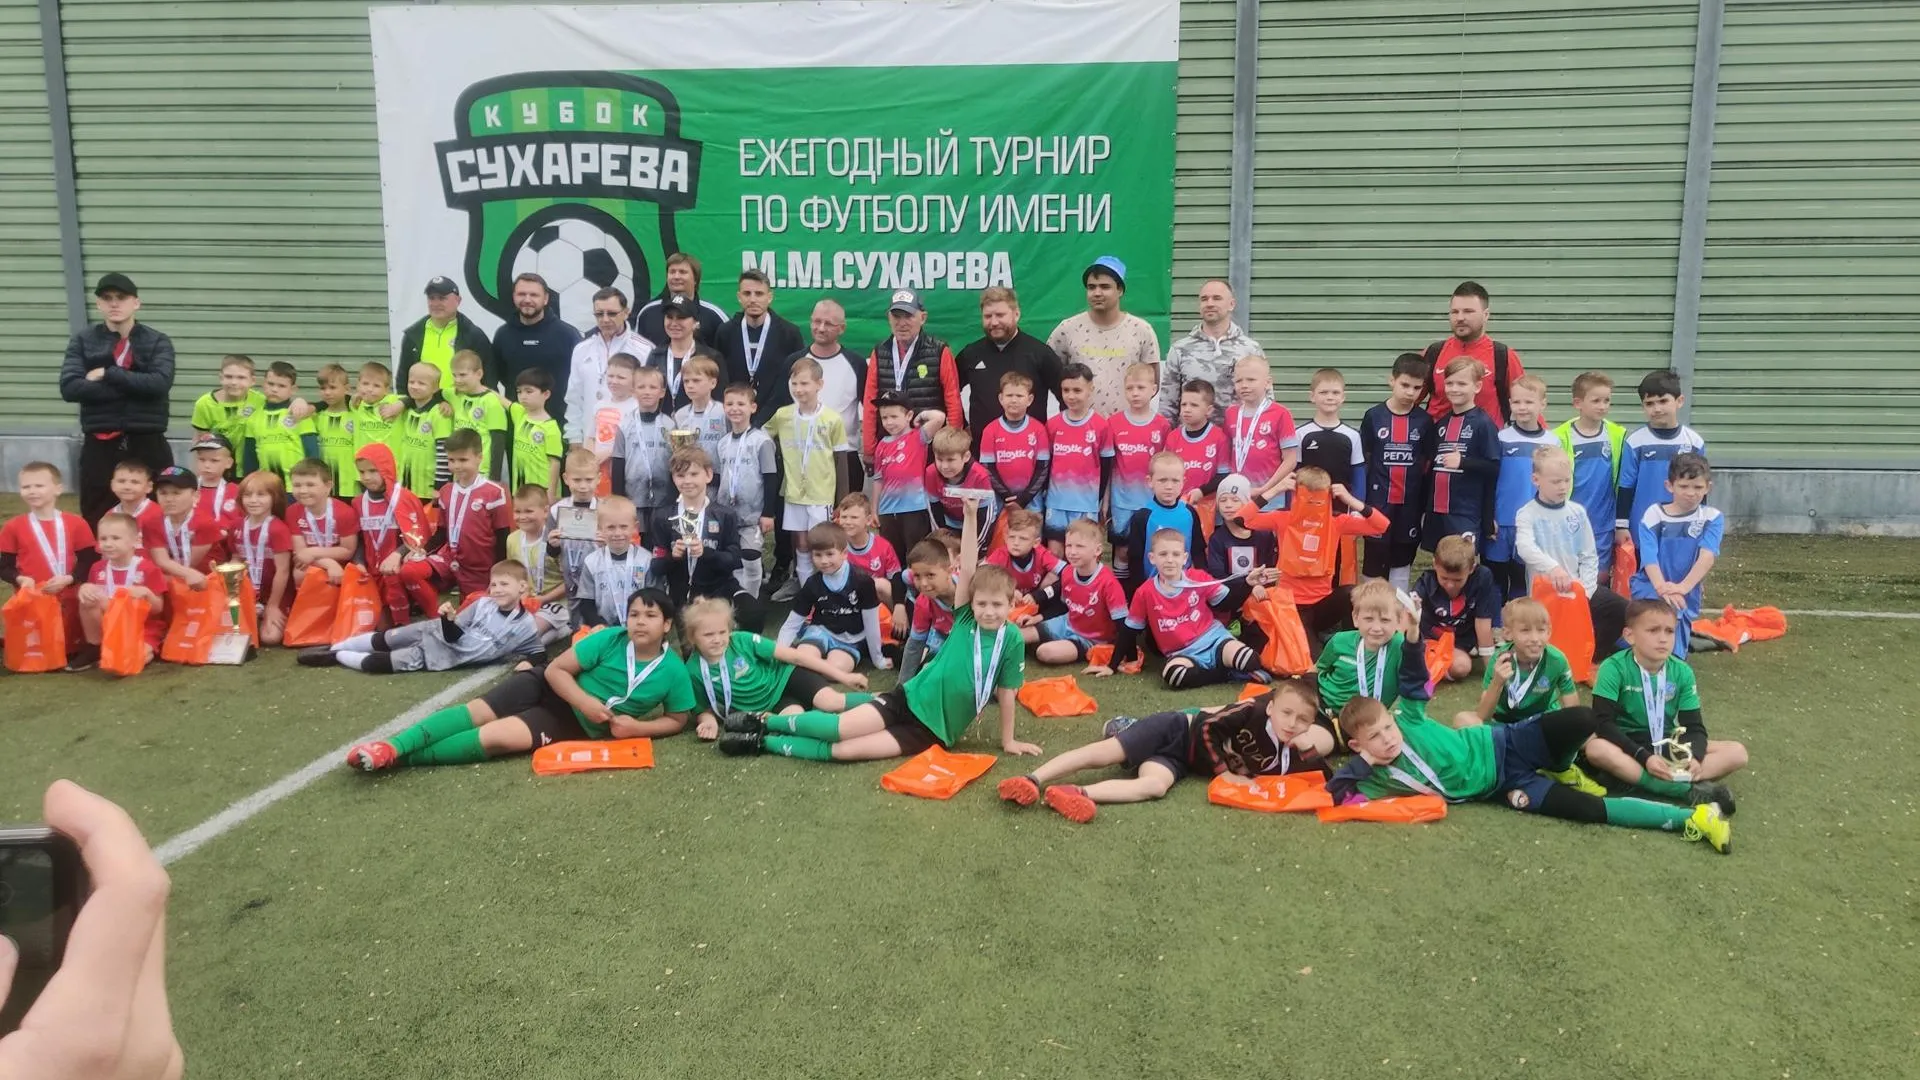 Спортивный турнир в Пушкинском районе собрал почти сто мальчишек и девчонок из Подмосковья